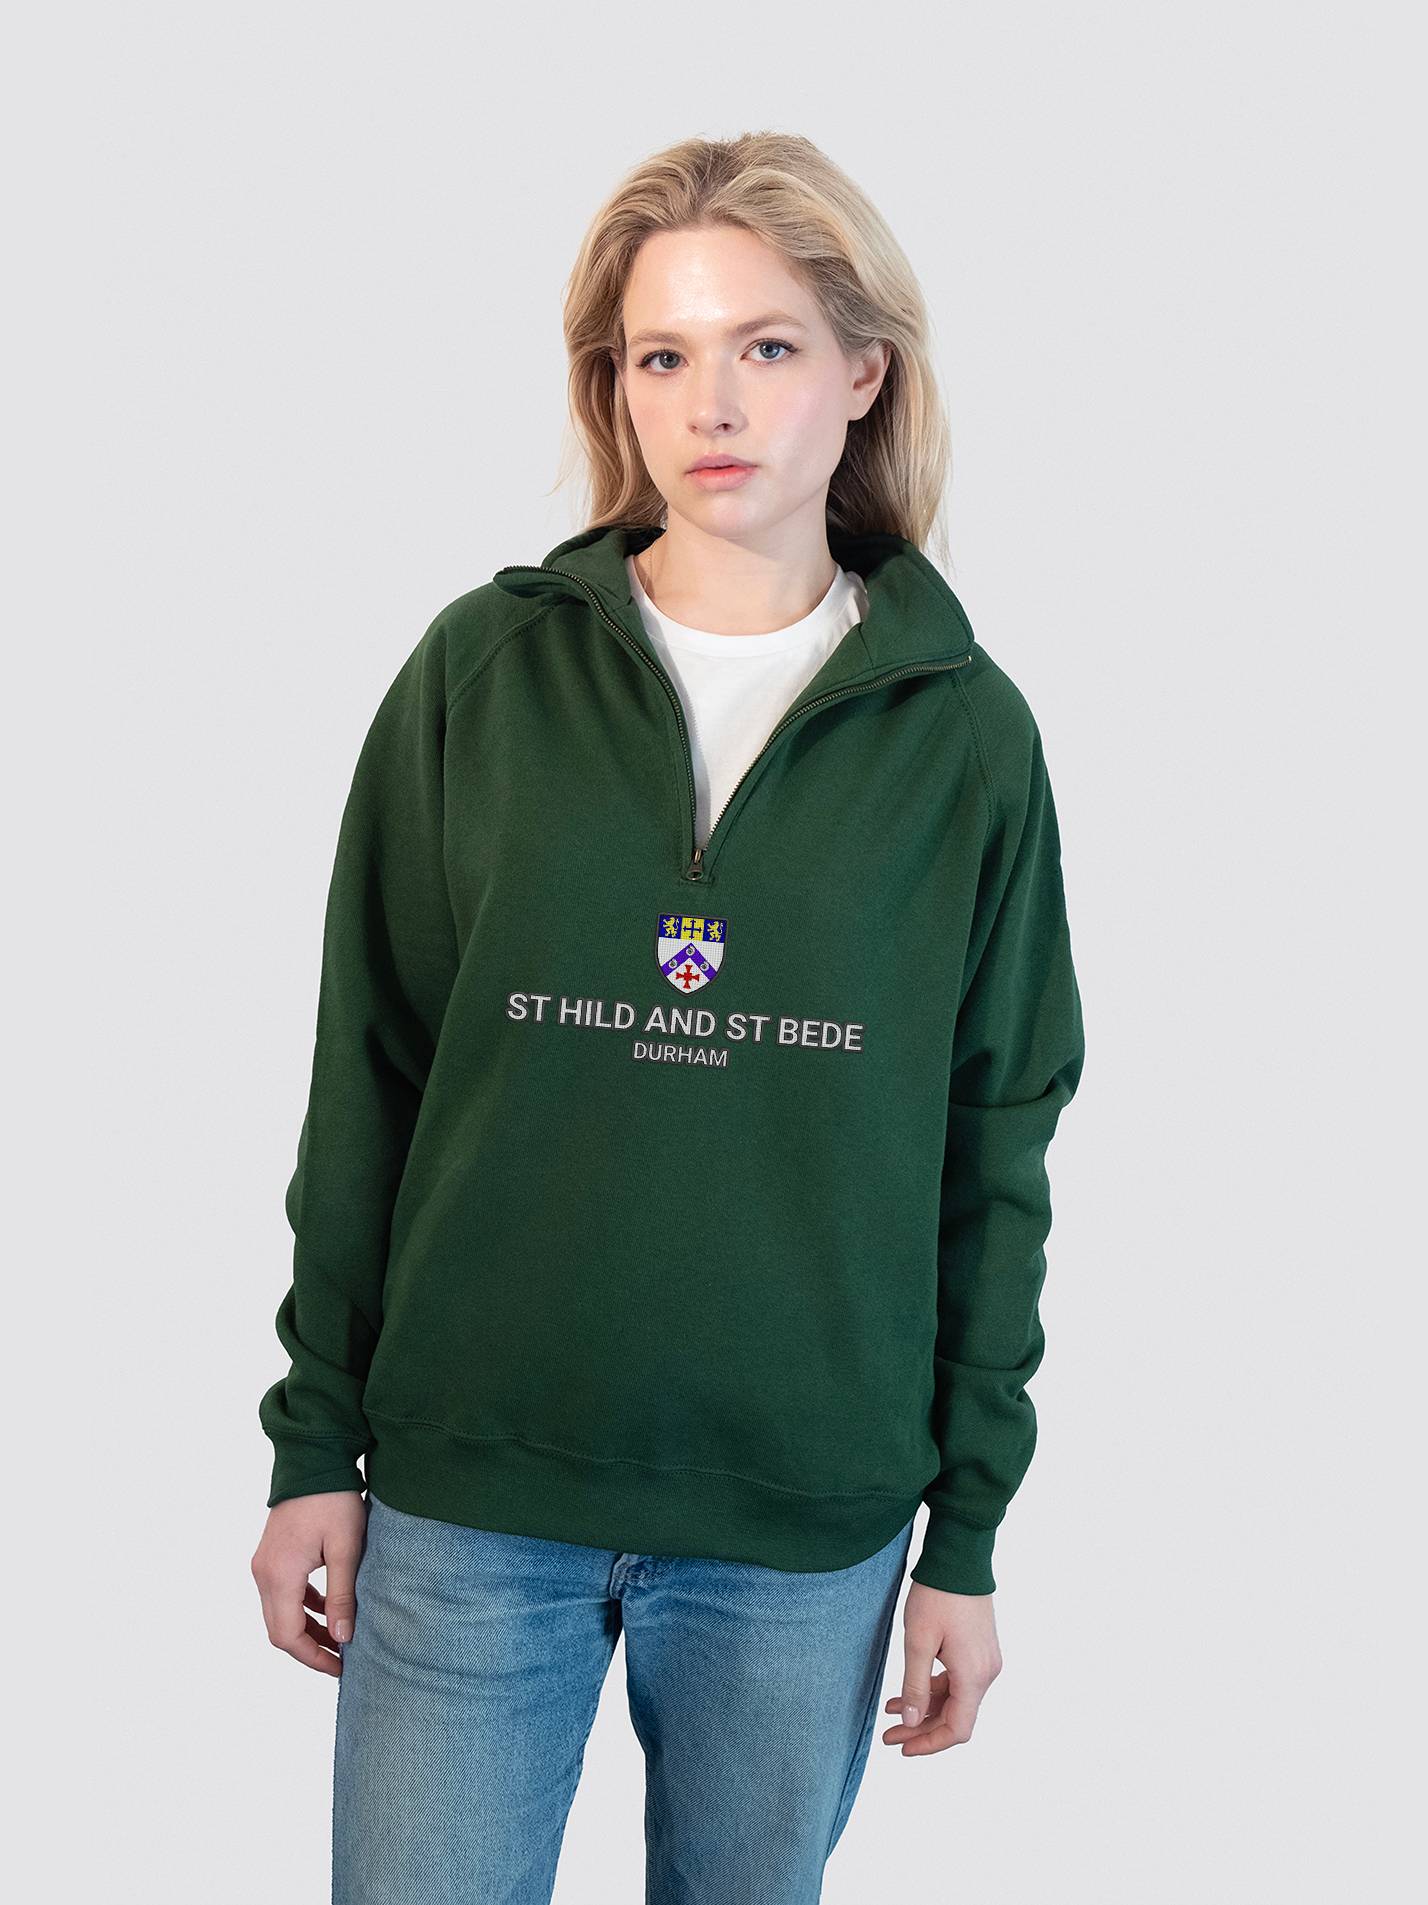 College of St Hild and St Bede Heritage Unisex 1/4 Zip Sweatshirt